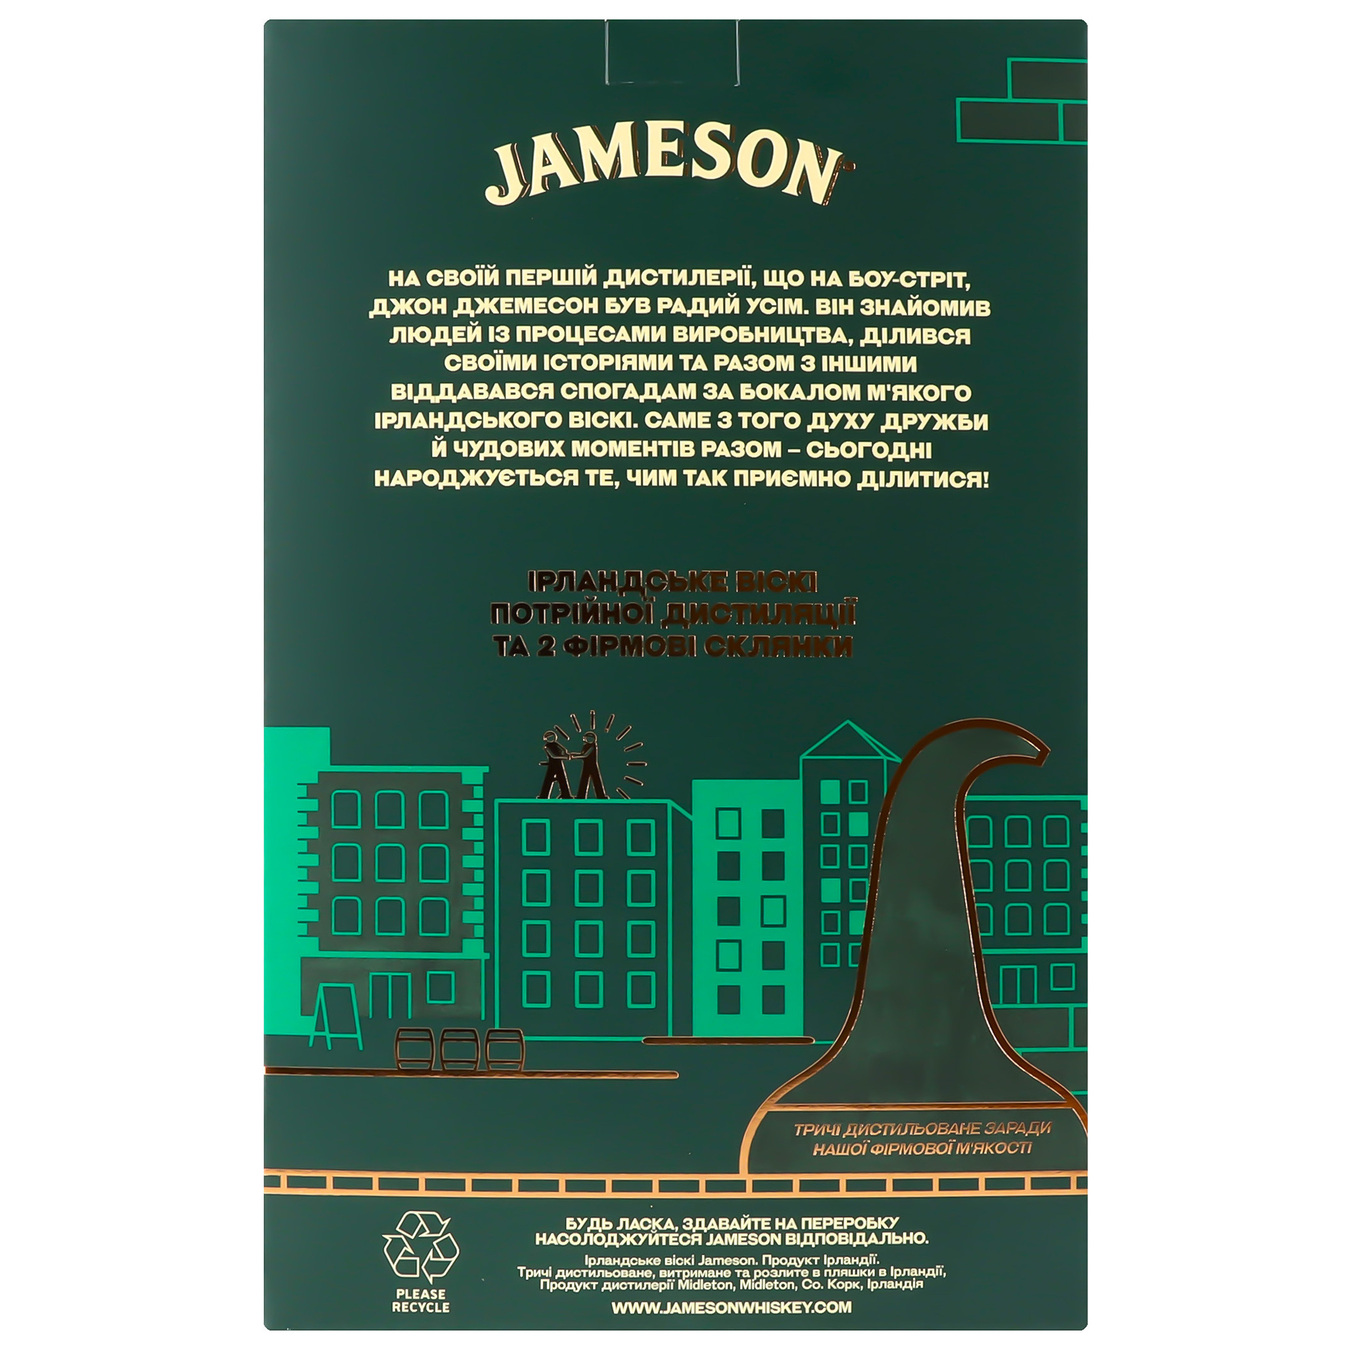 Jameson whiskey 40% 0.7l + 2 glasses 5